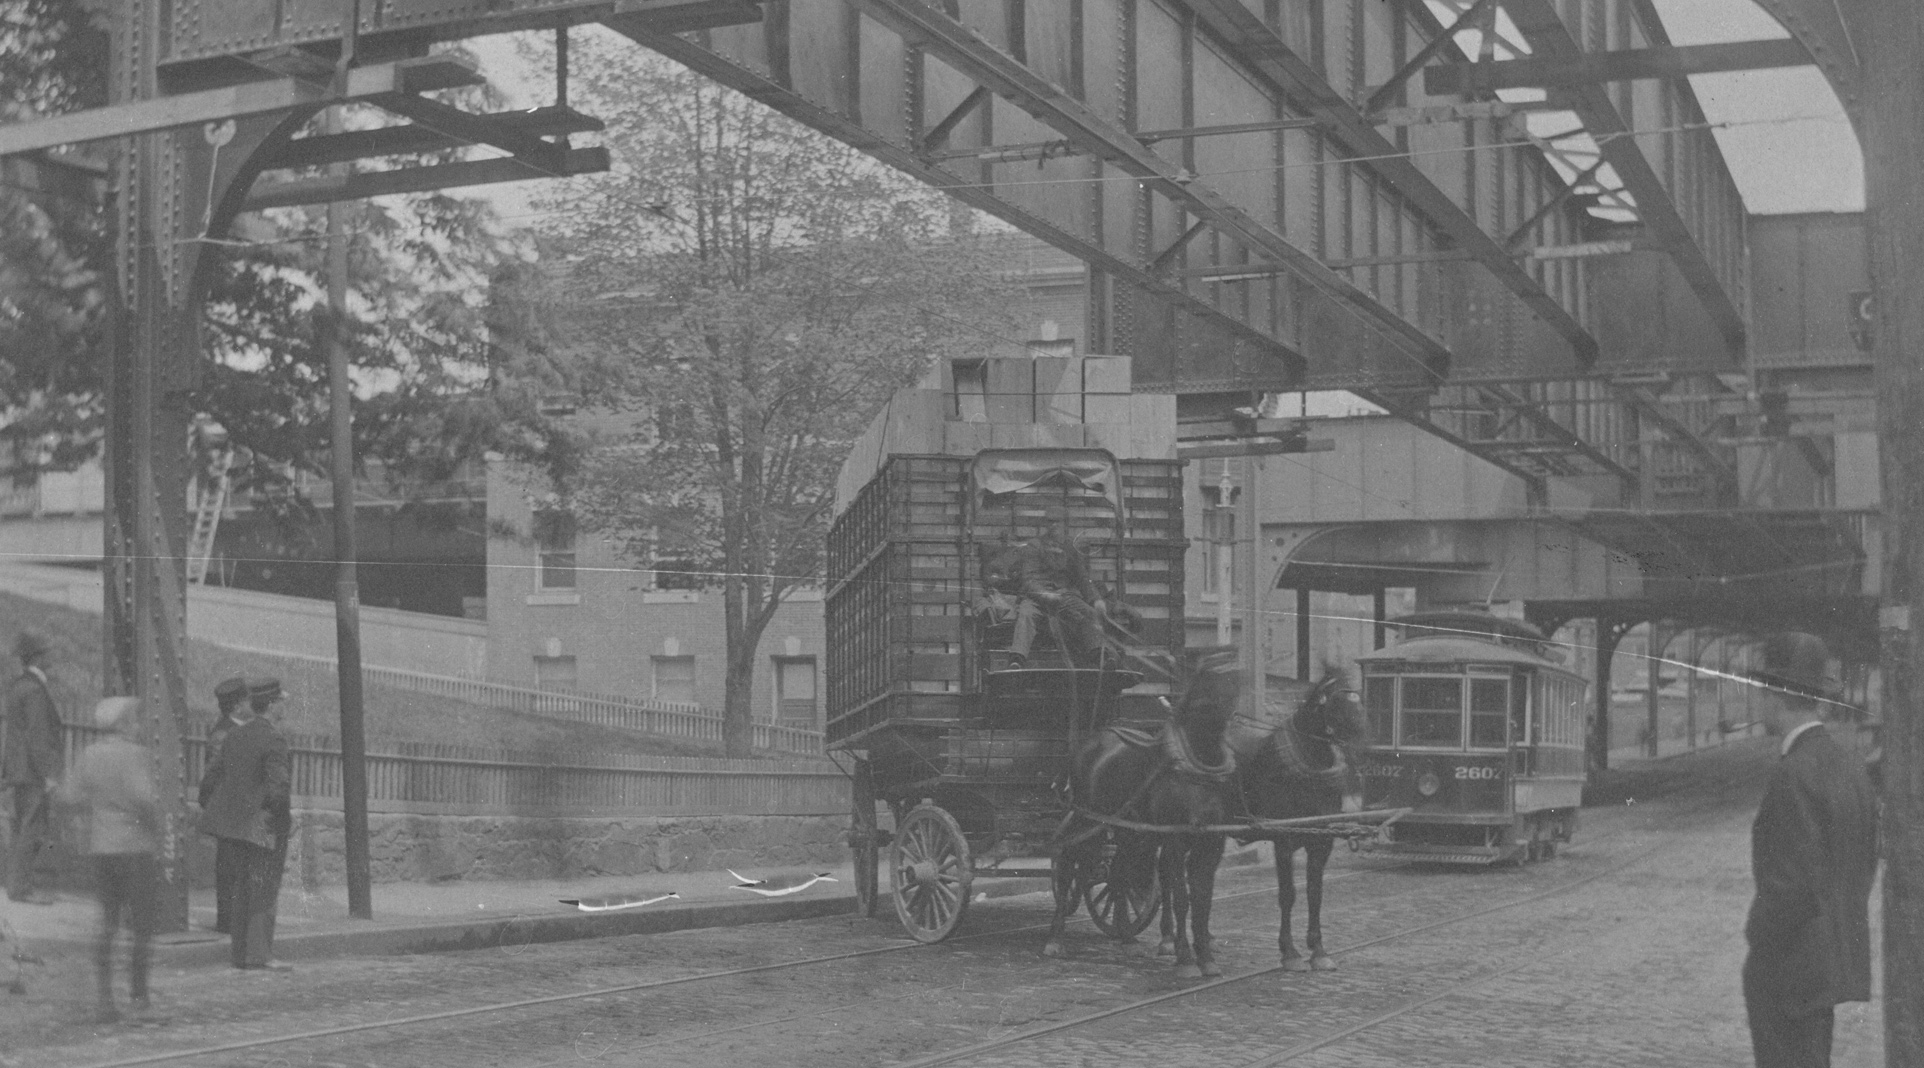 Storrowing in Roxbury in 1906